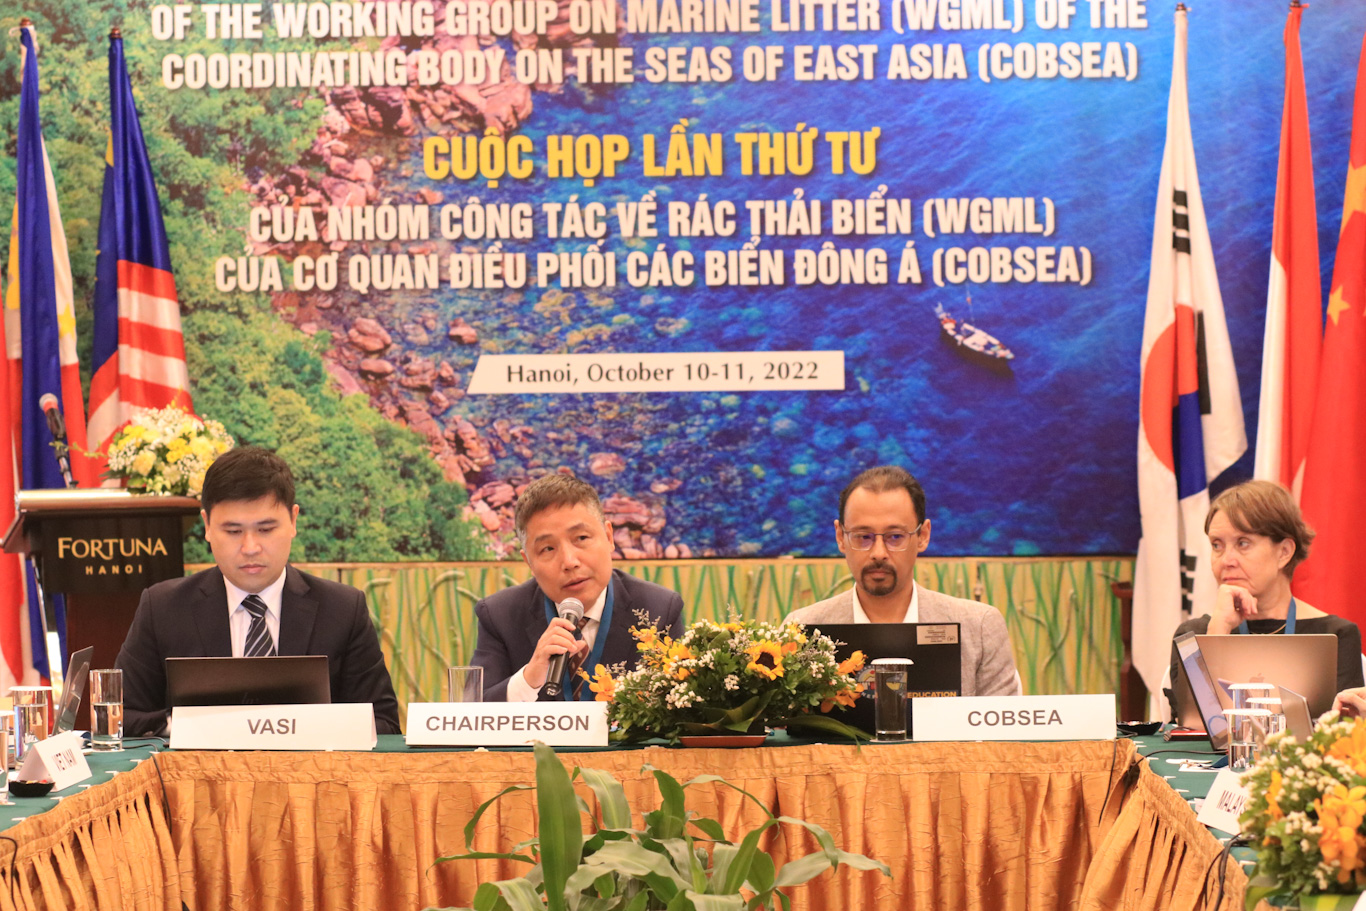 Nhóm công tác của Cơ quan điều phối các biển Đông Á tổ chức cuộc họp lần thứ 4 về rác thải đại dương